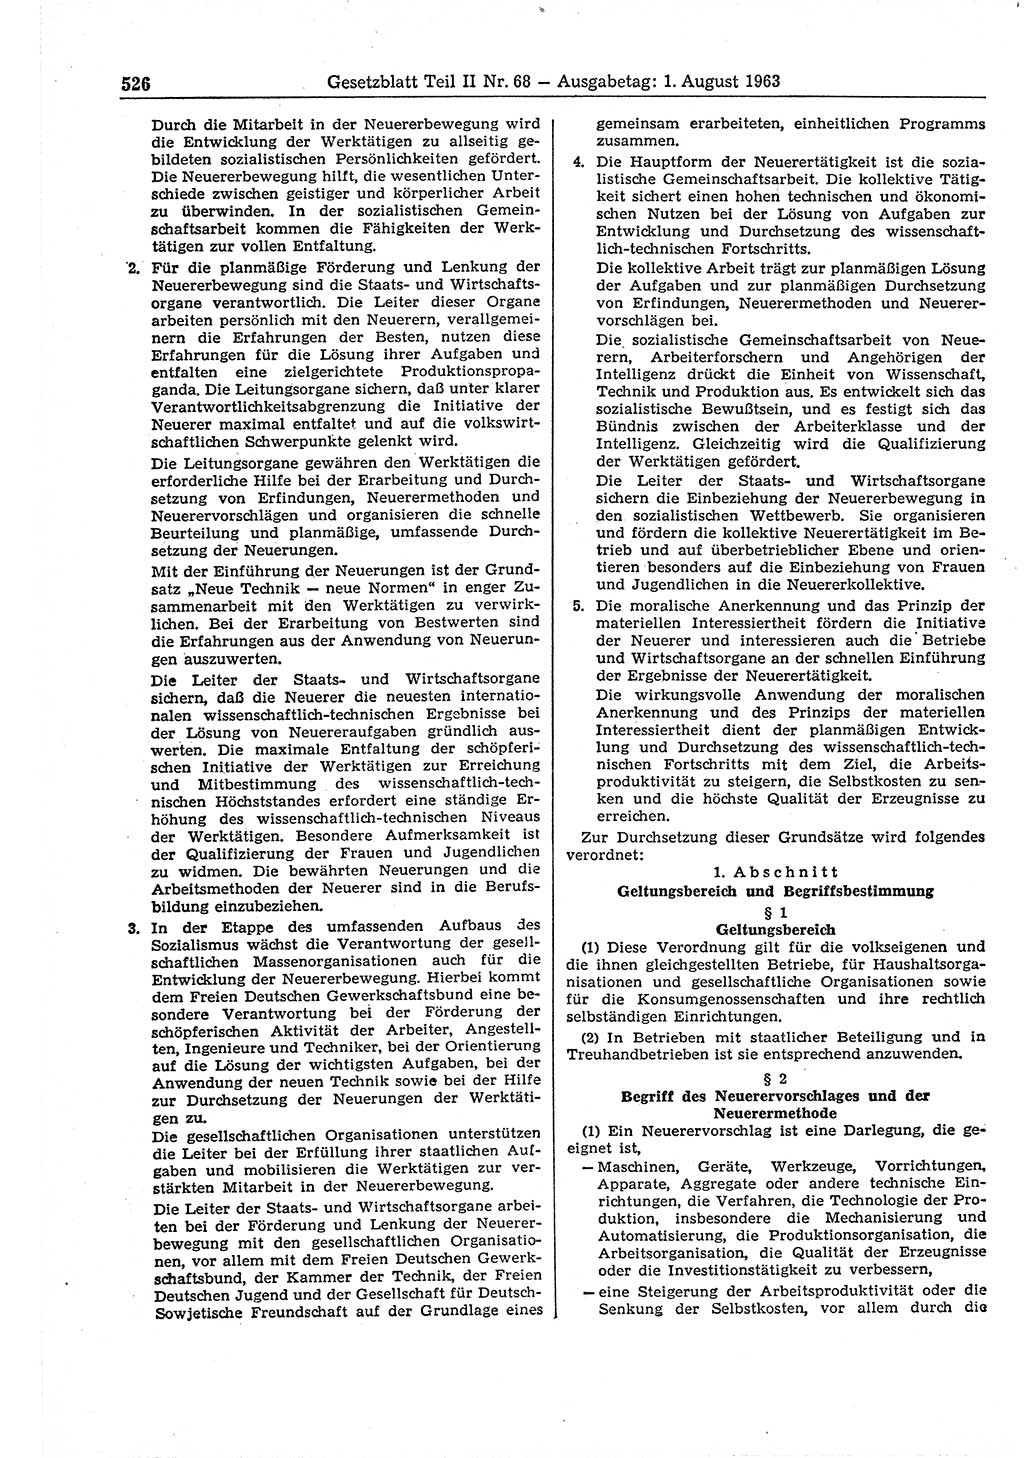 Gesetzblatt (GBl.) der Deutschen Demokratischen Republik (DDR) Teil ⅠⅠ 1963, Seite 526 (GBl. DDR ⅠⅠ 1963, S. 526)